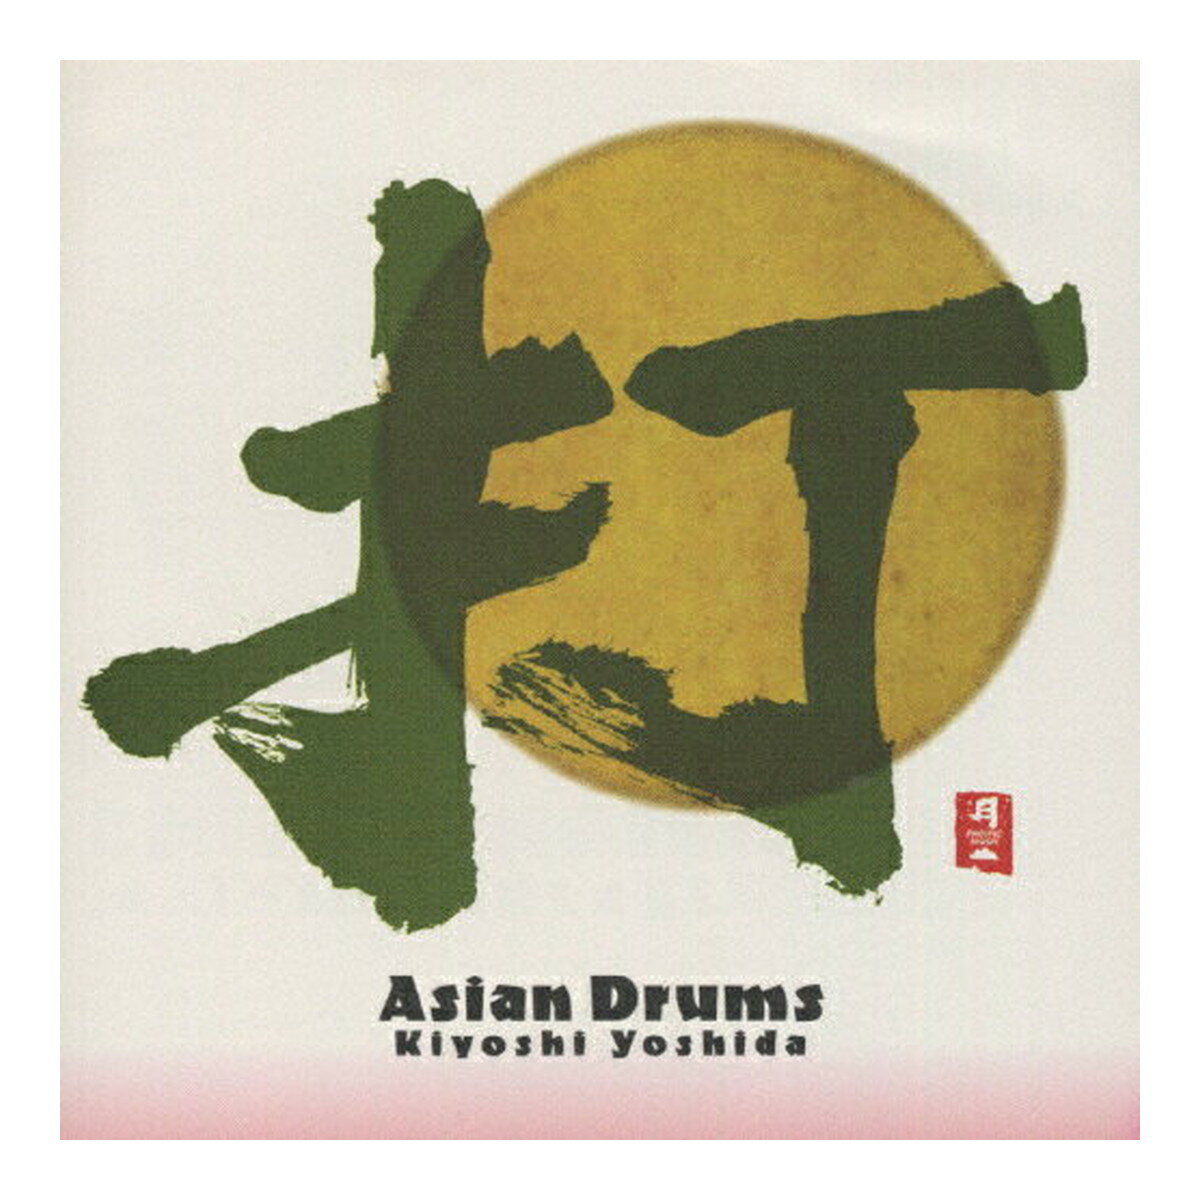 【送料込・まとめ買い×5個セット】日本香堂 コロムビアマーケティング PACIFIC MOON 打 Asian Drums CHCB-10013 CD